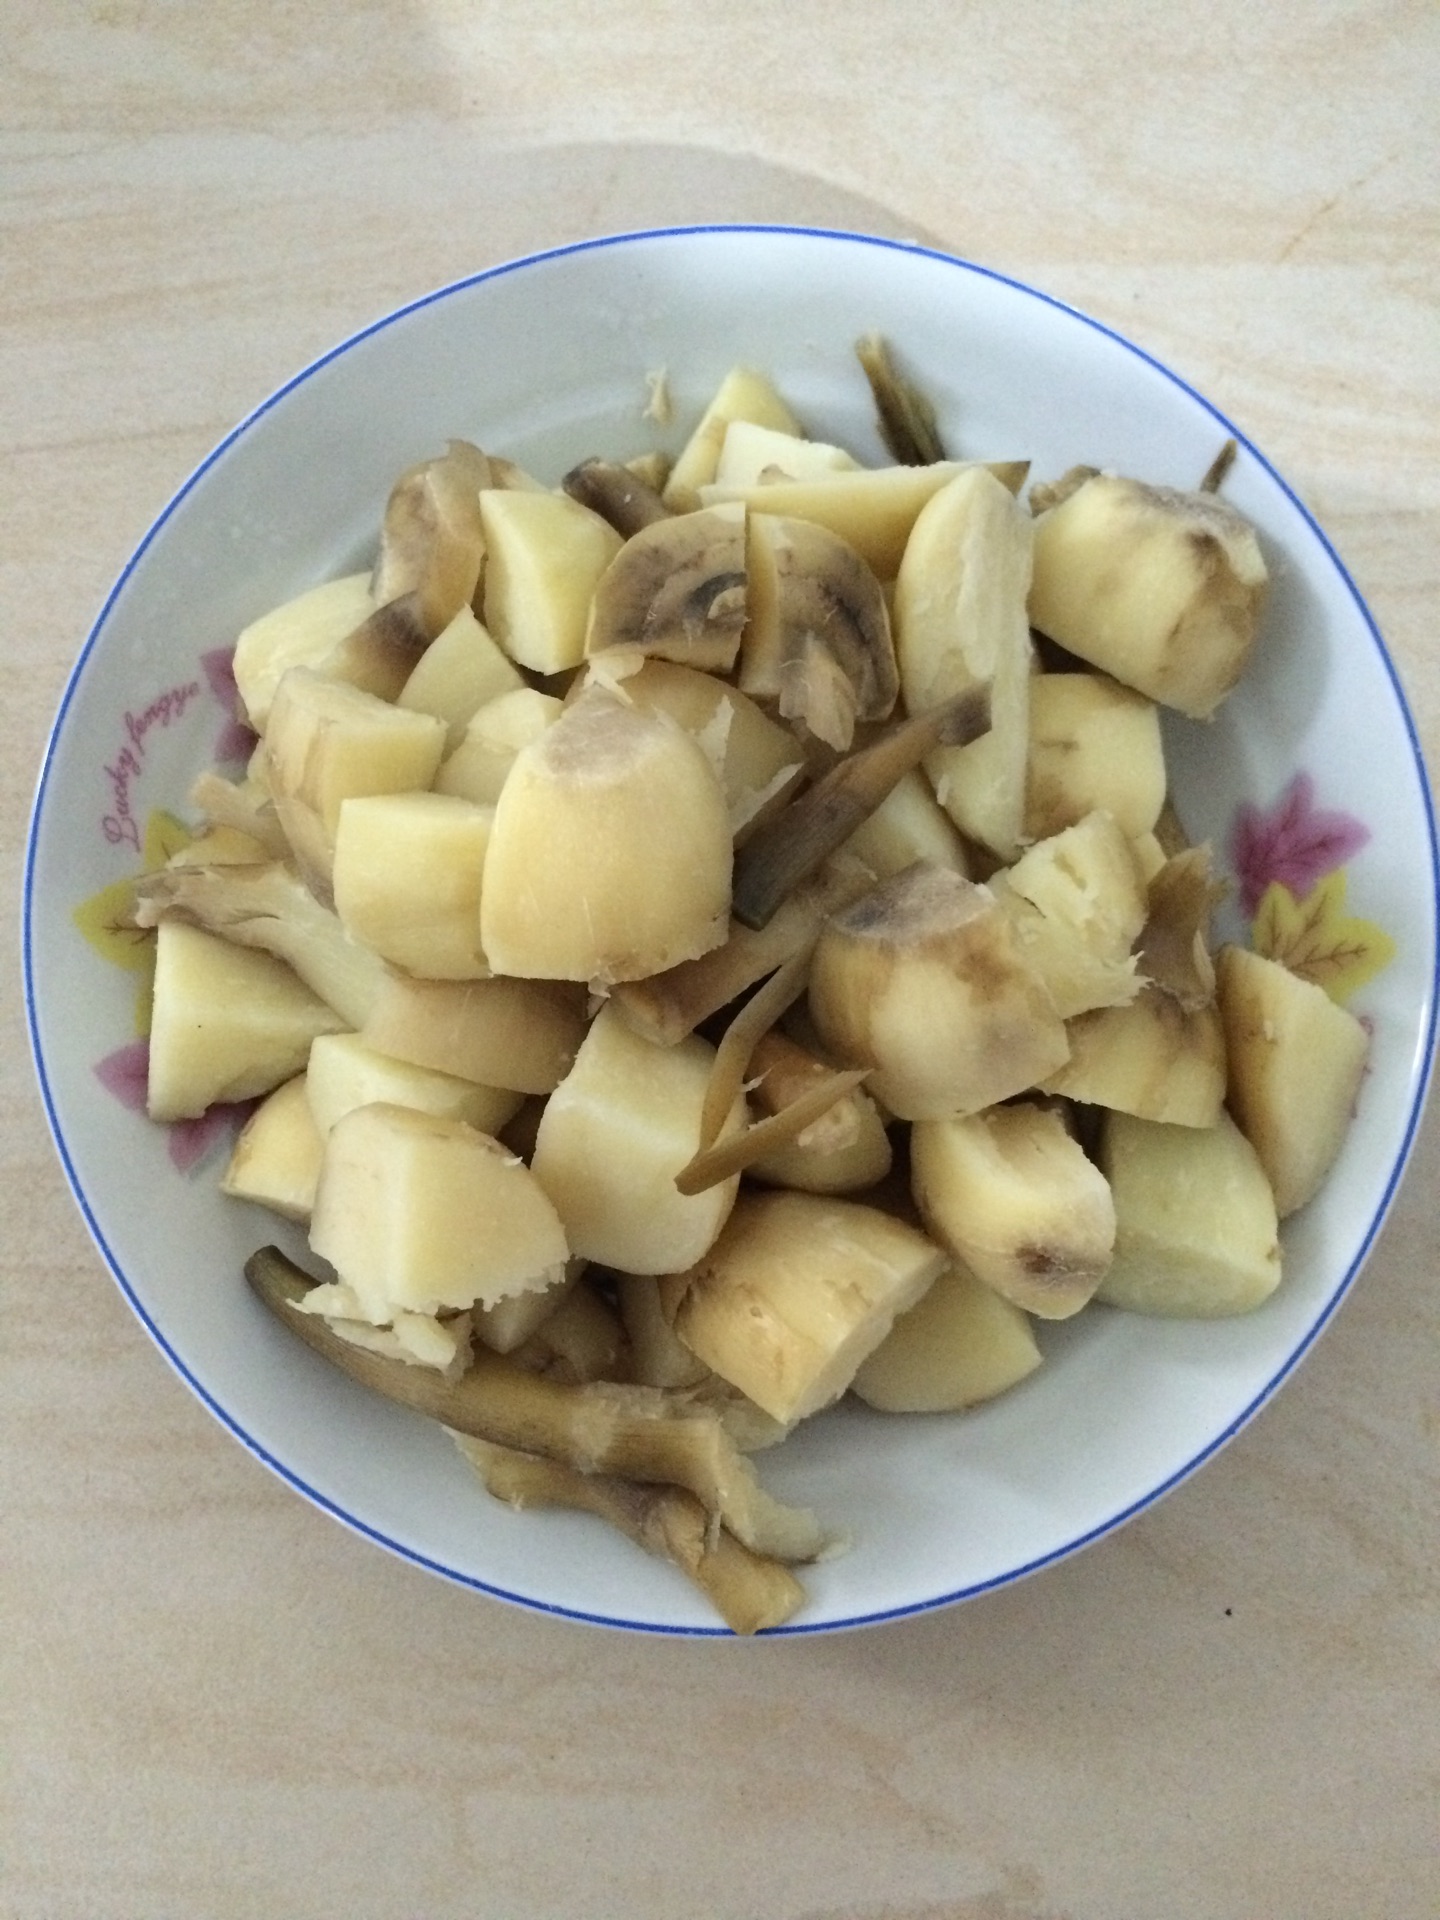 猴头菇养胃汤怎么做_猴头菇养胃汤的做法_阿阿阿宜_豆果美食